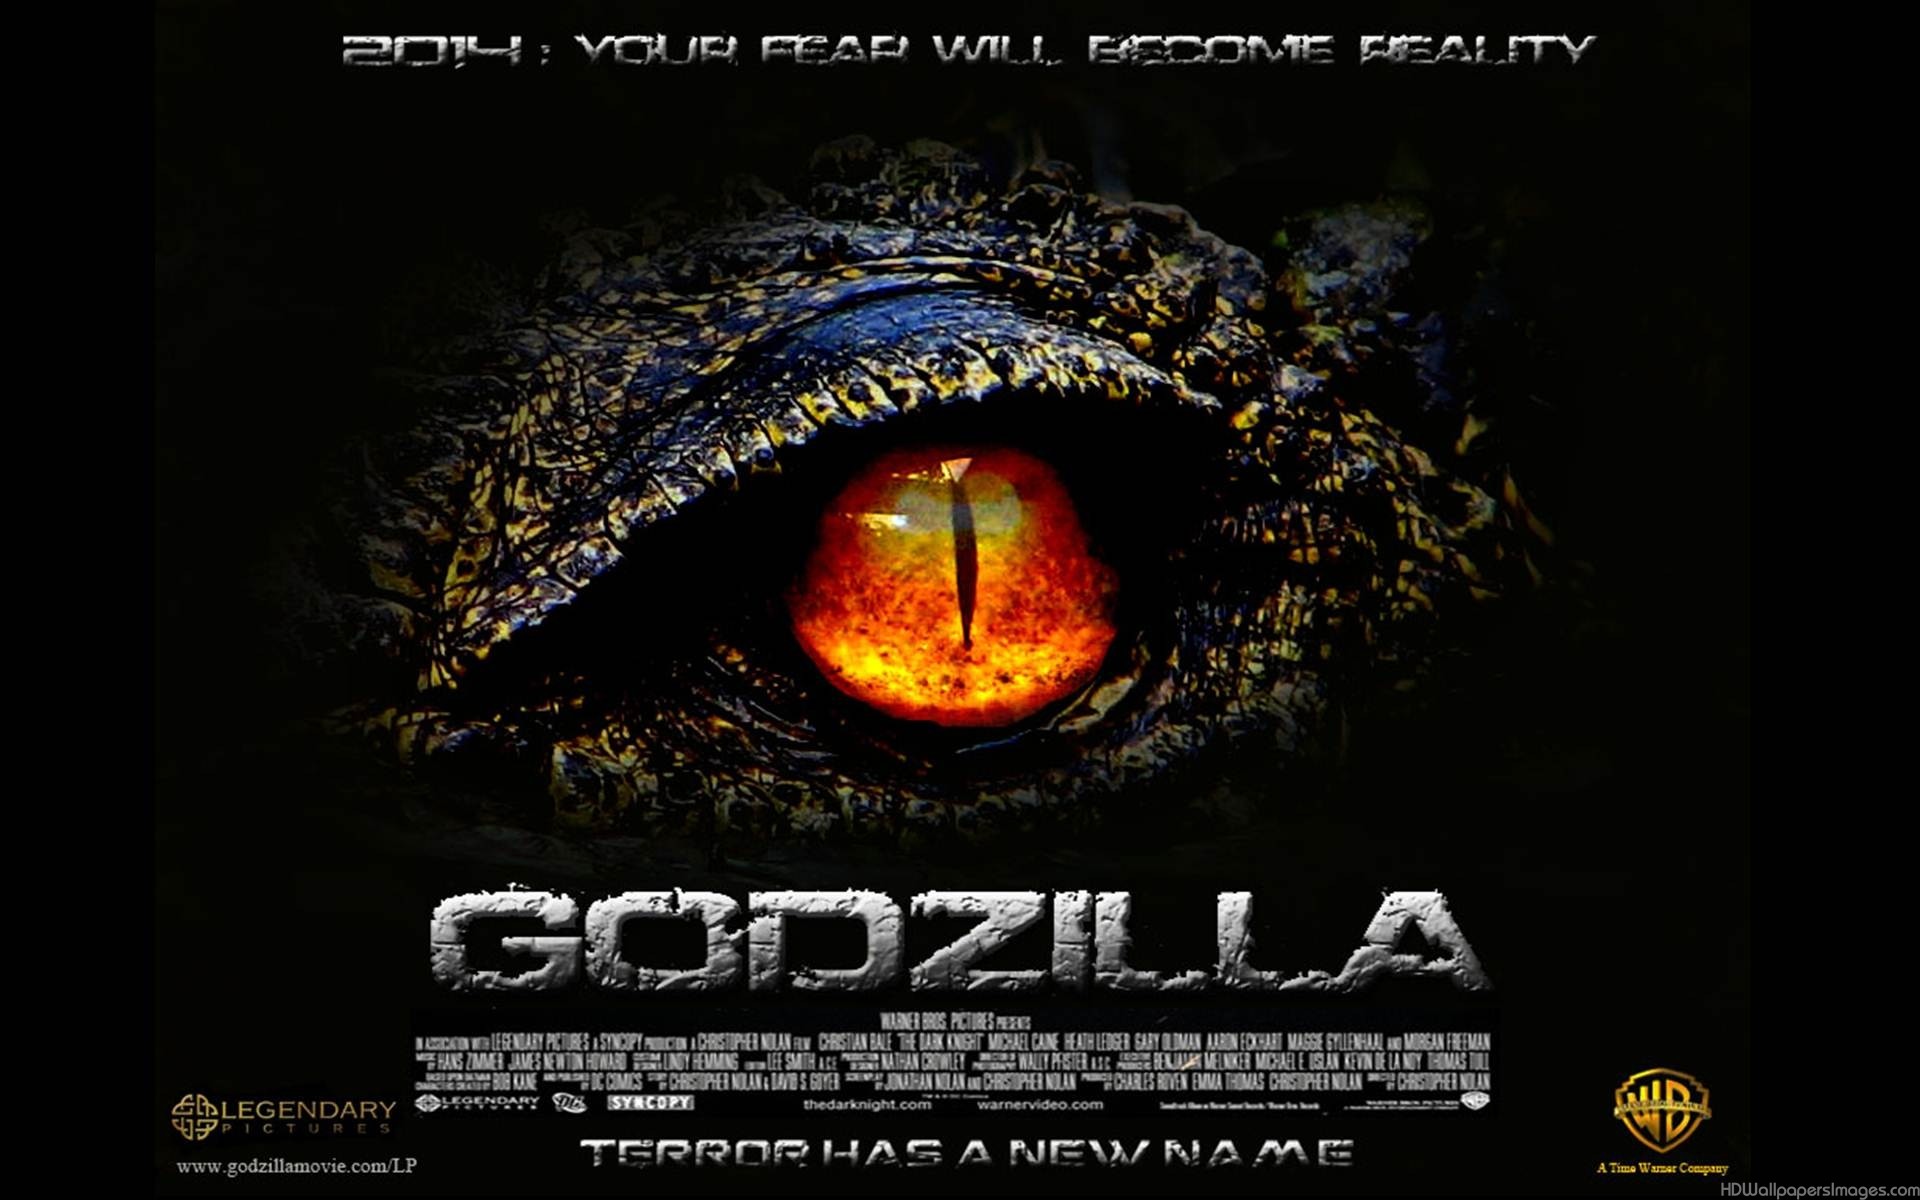 Godzilla 2014 Movie wallpapers 79 Wallpapers Wallpapers For Desktop